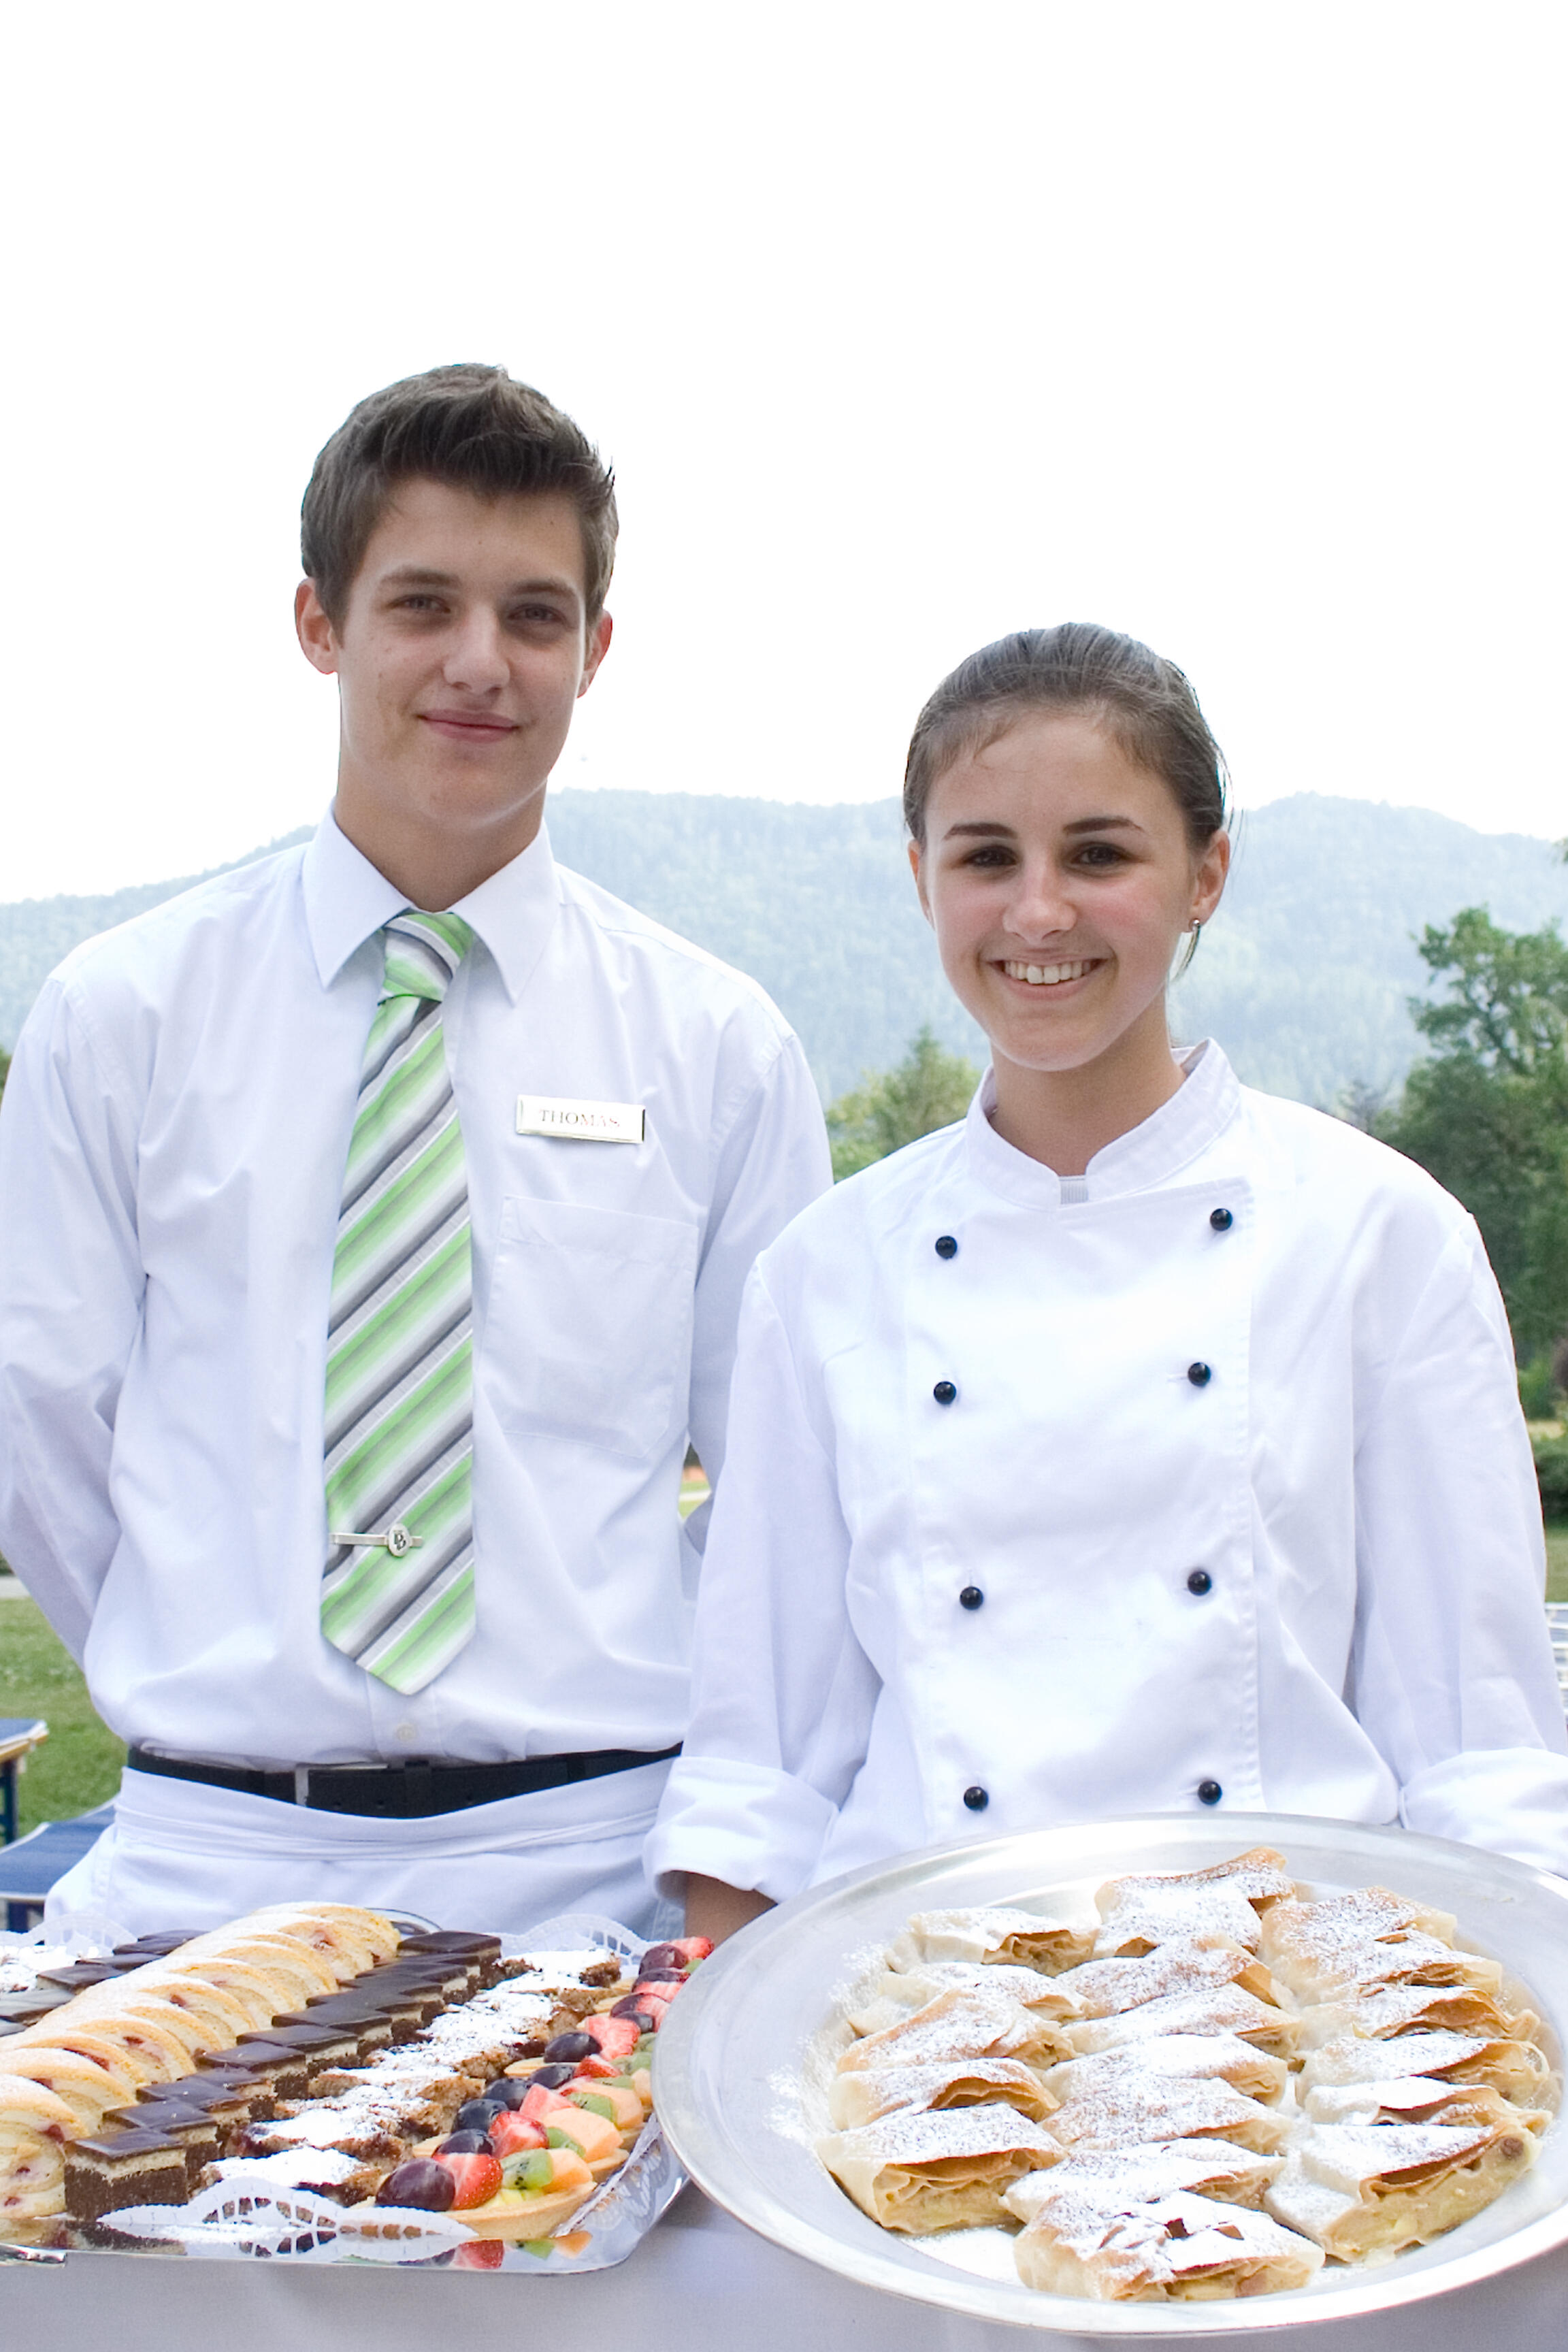 Zwei Lehrlinge, ein Bub und ein Mädchen in Gastronomie-Berufskleidung halten Tabletts mit Mehlspeien.